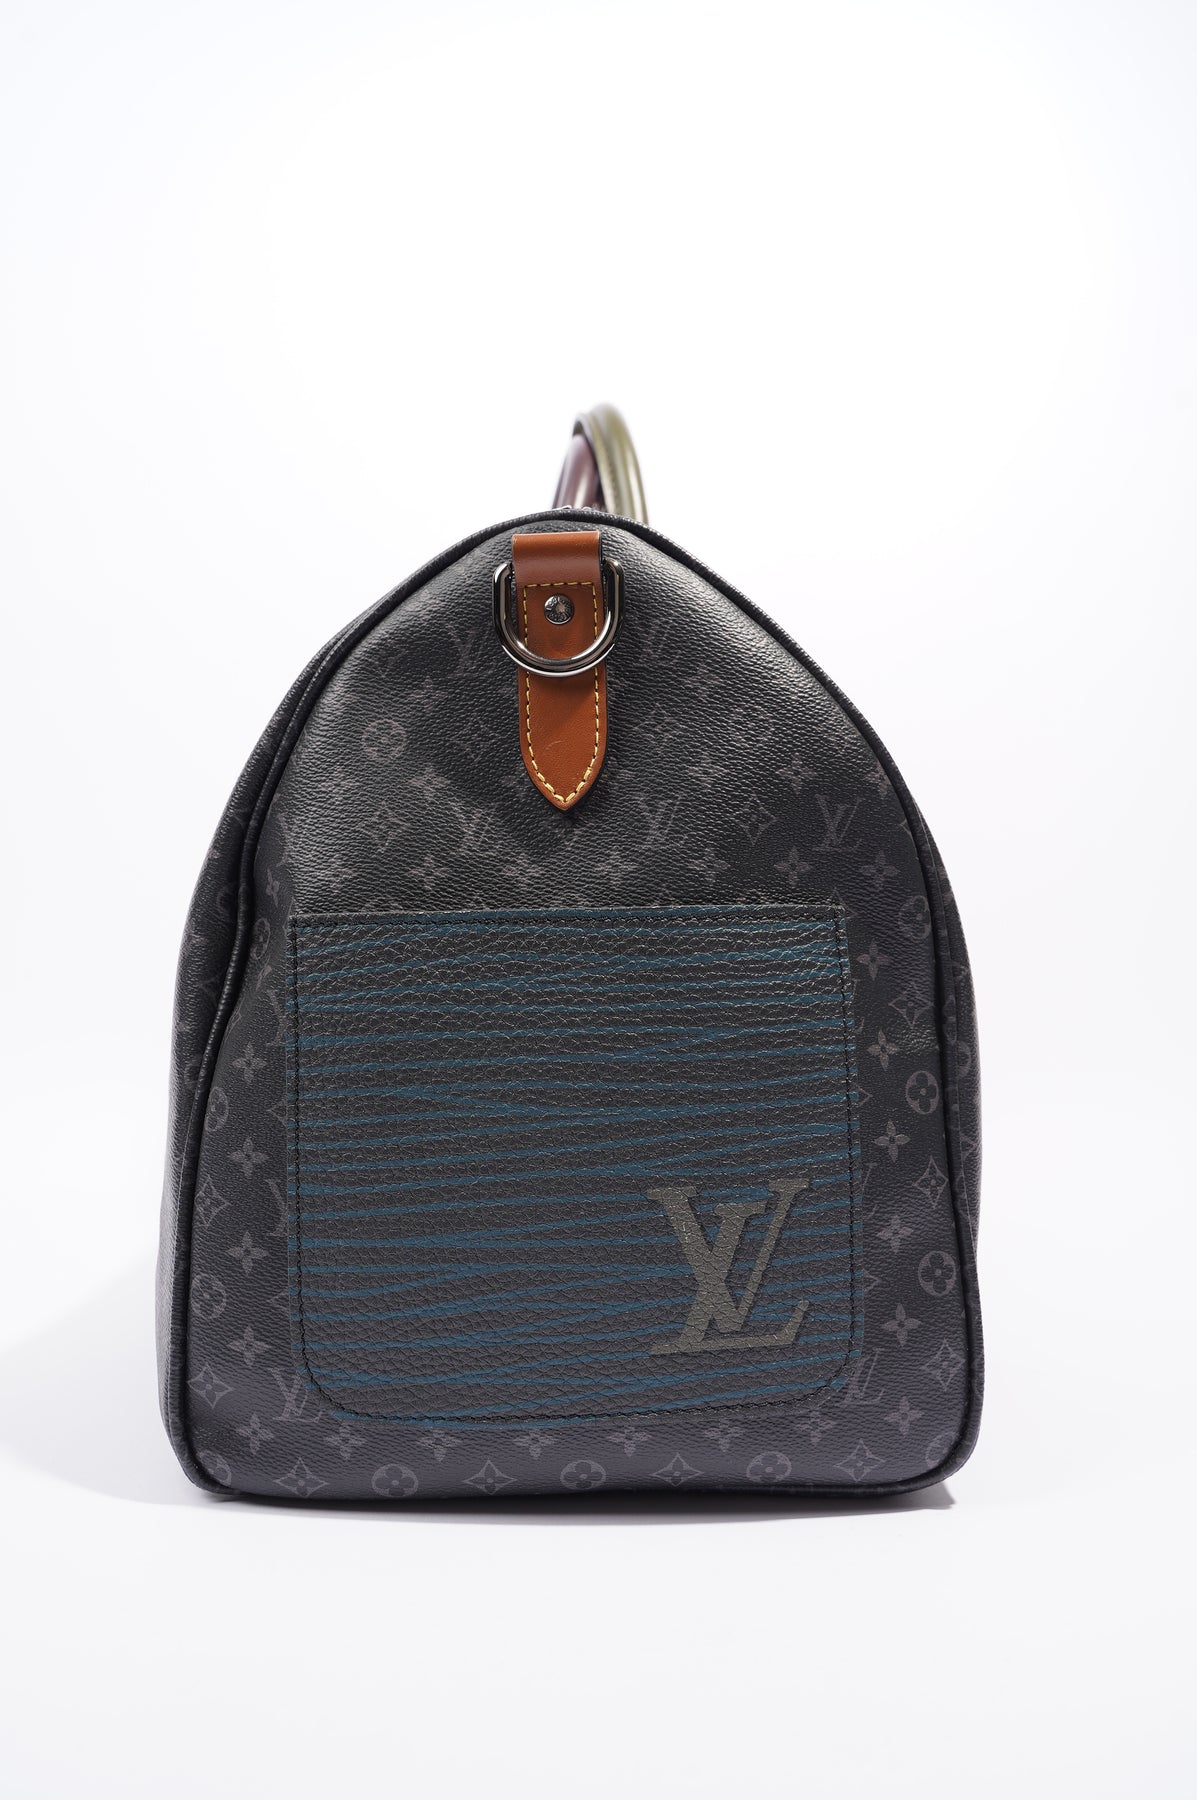 M81572 Louis Vuitton Monogram Virgil Abloh's “Climbing” Chalk Pouch